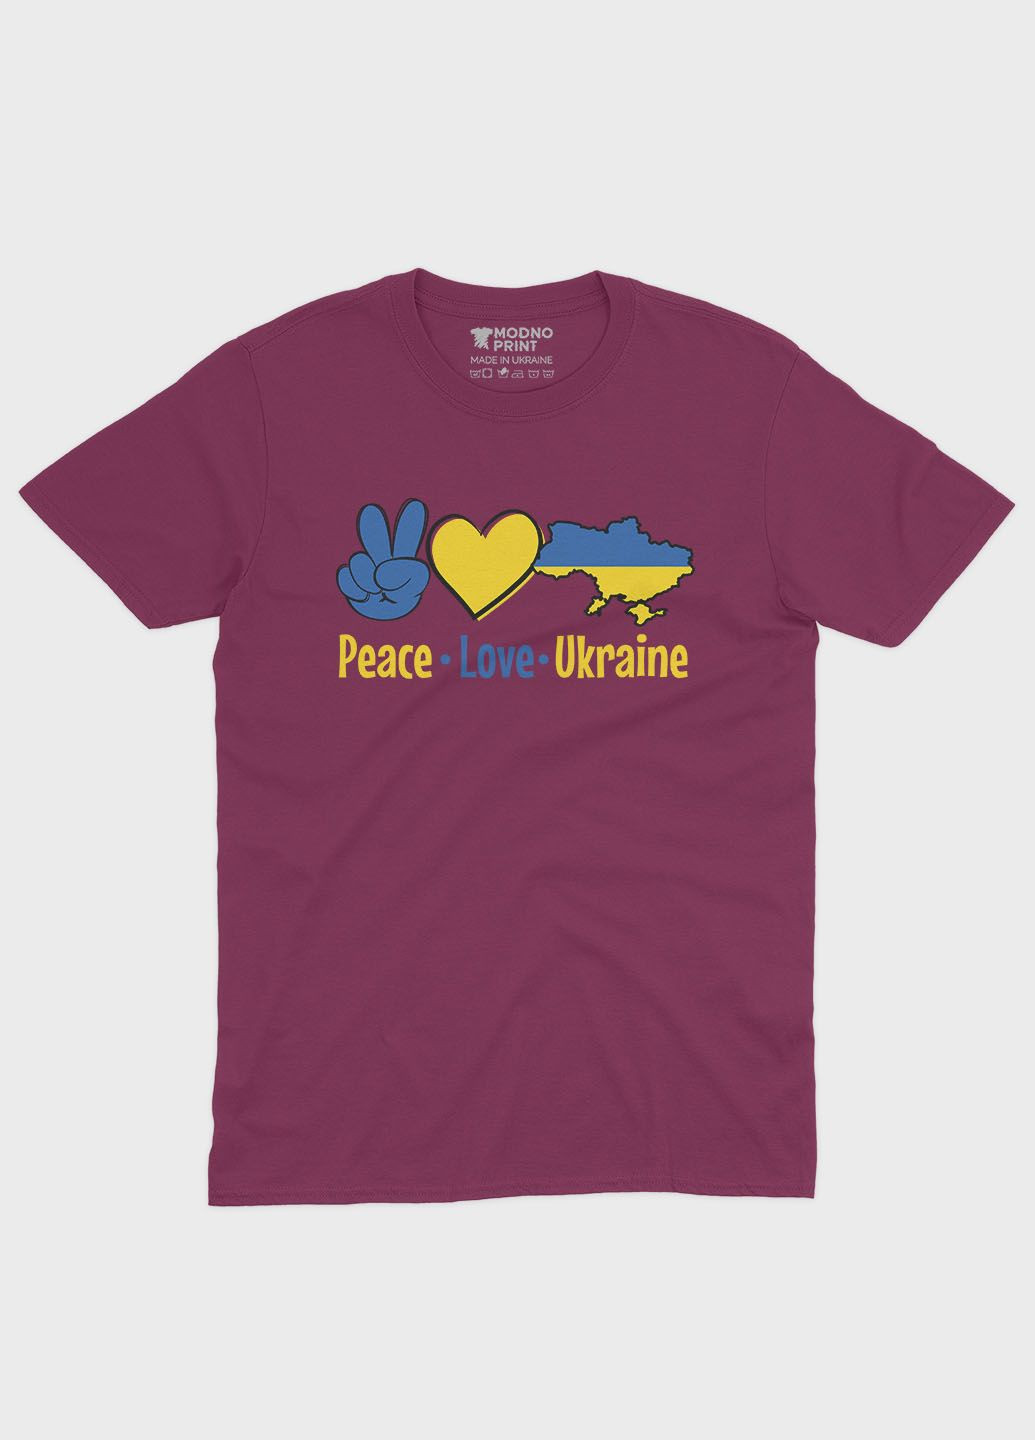 Бордовая летняя женская футболка с патриотическим принтом peace love ukraine (ts001-2-bgr-005-1-040-f) Modno